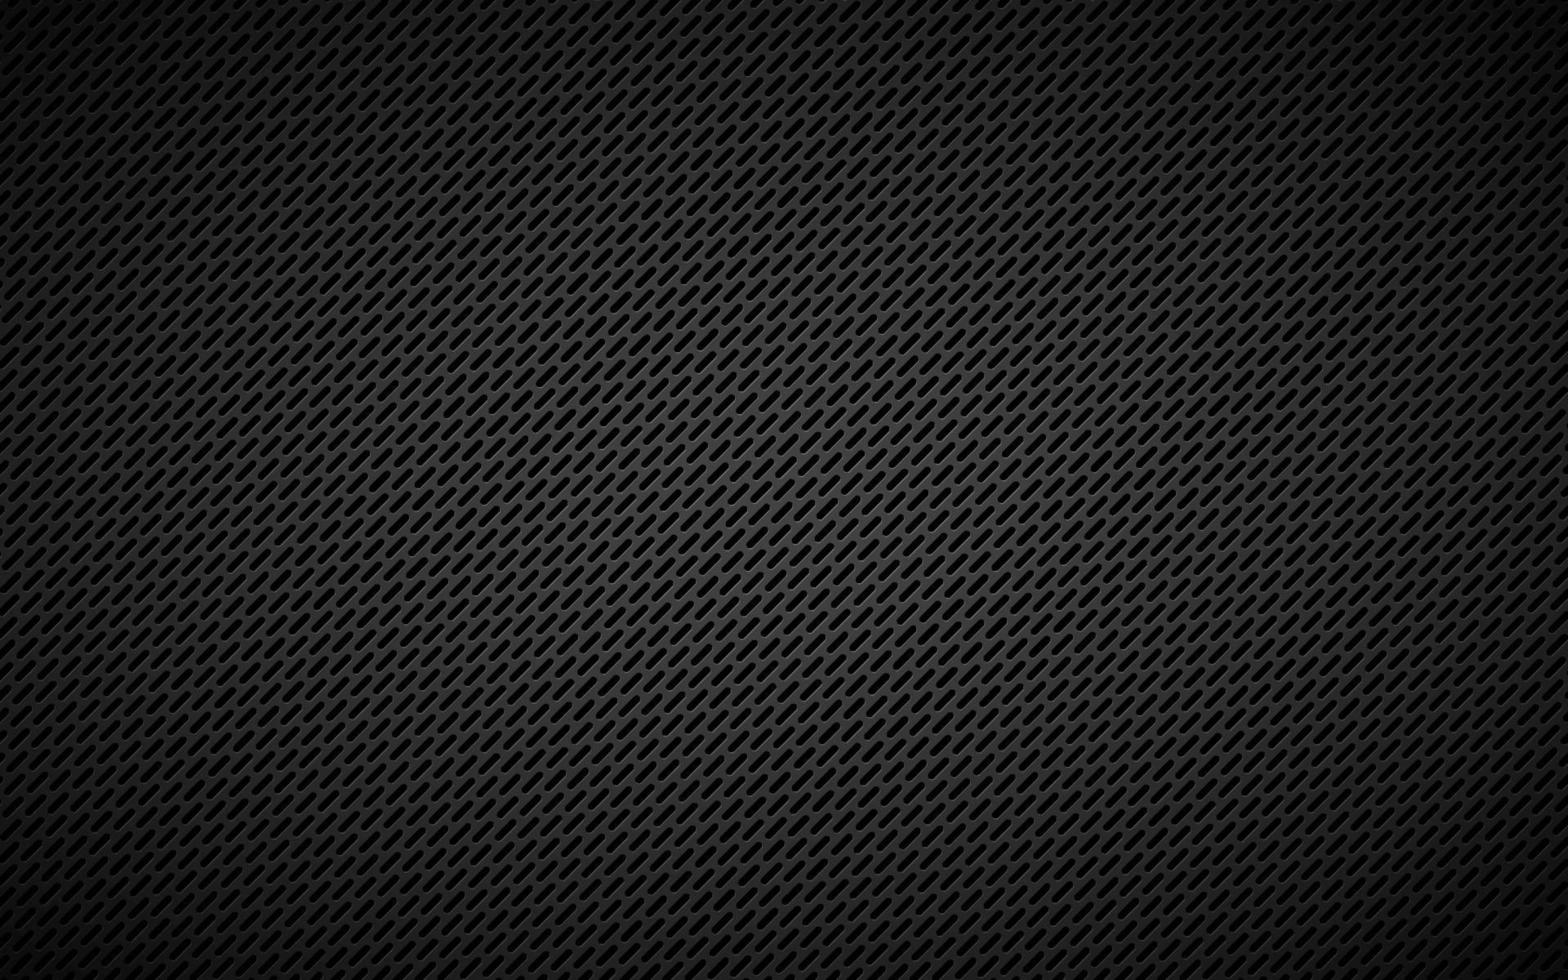 fundo perfurado de metal preto escuro. papel de parede abstrato cinza metálico de aço inoxidável. ilustração vetorial simples vetor